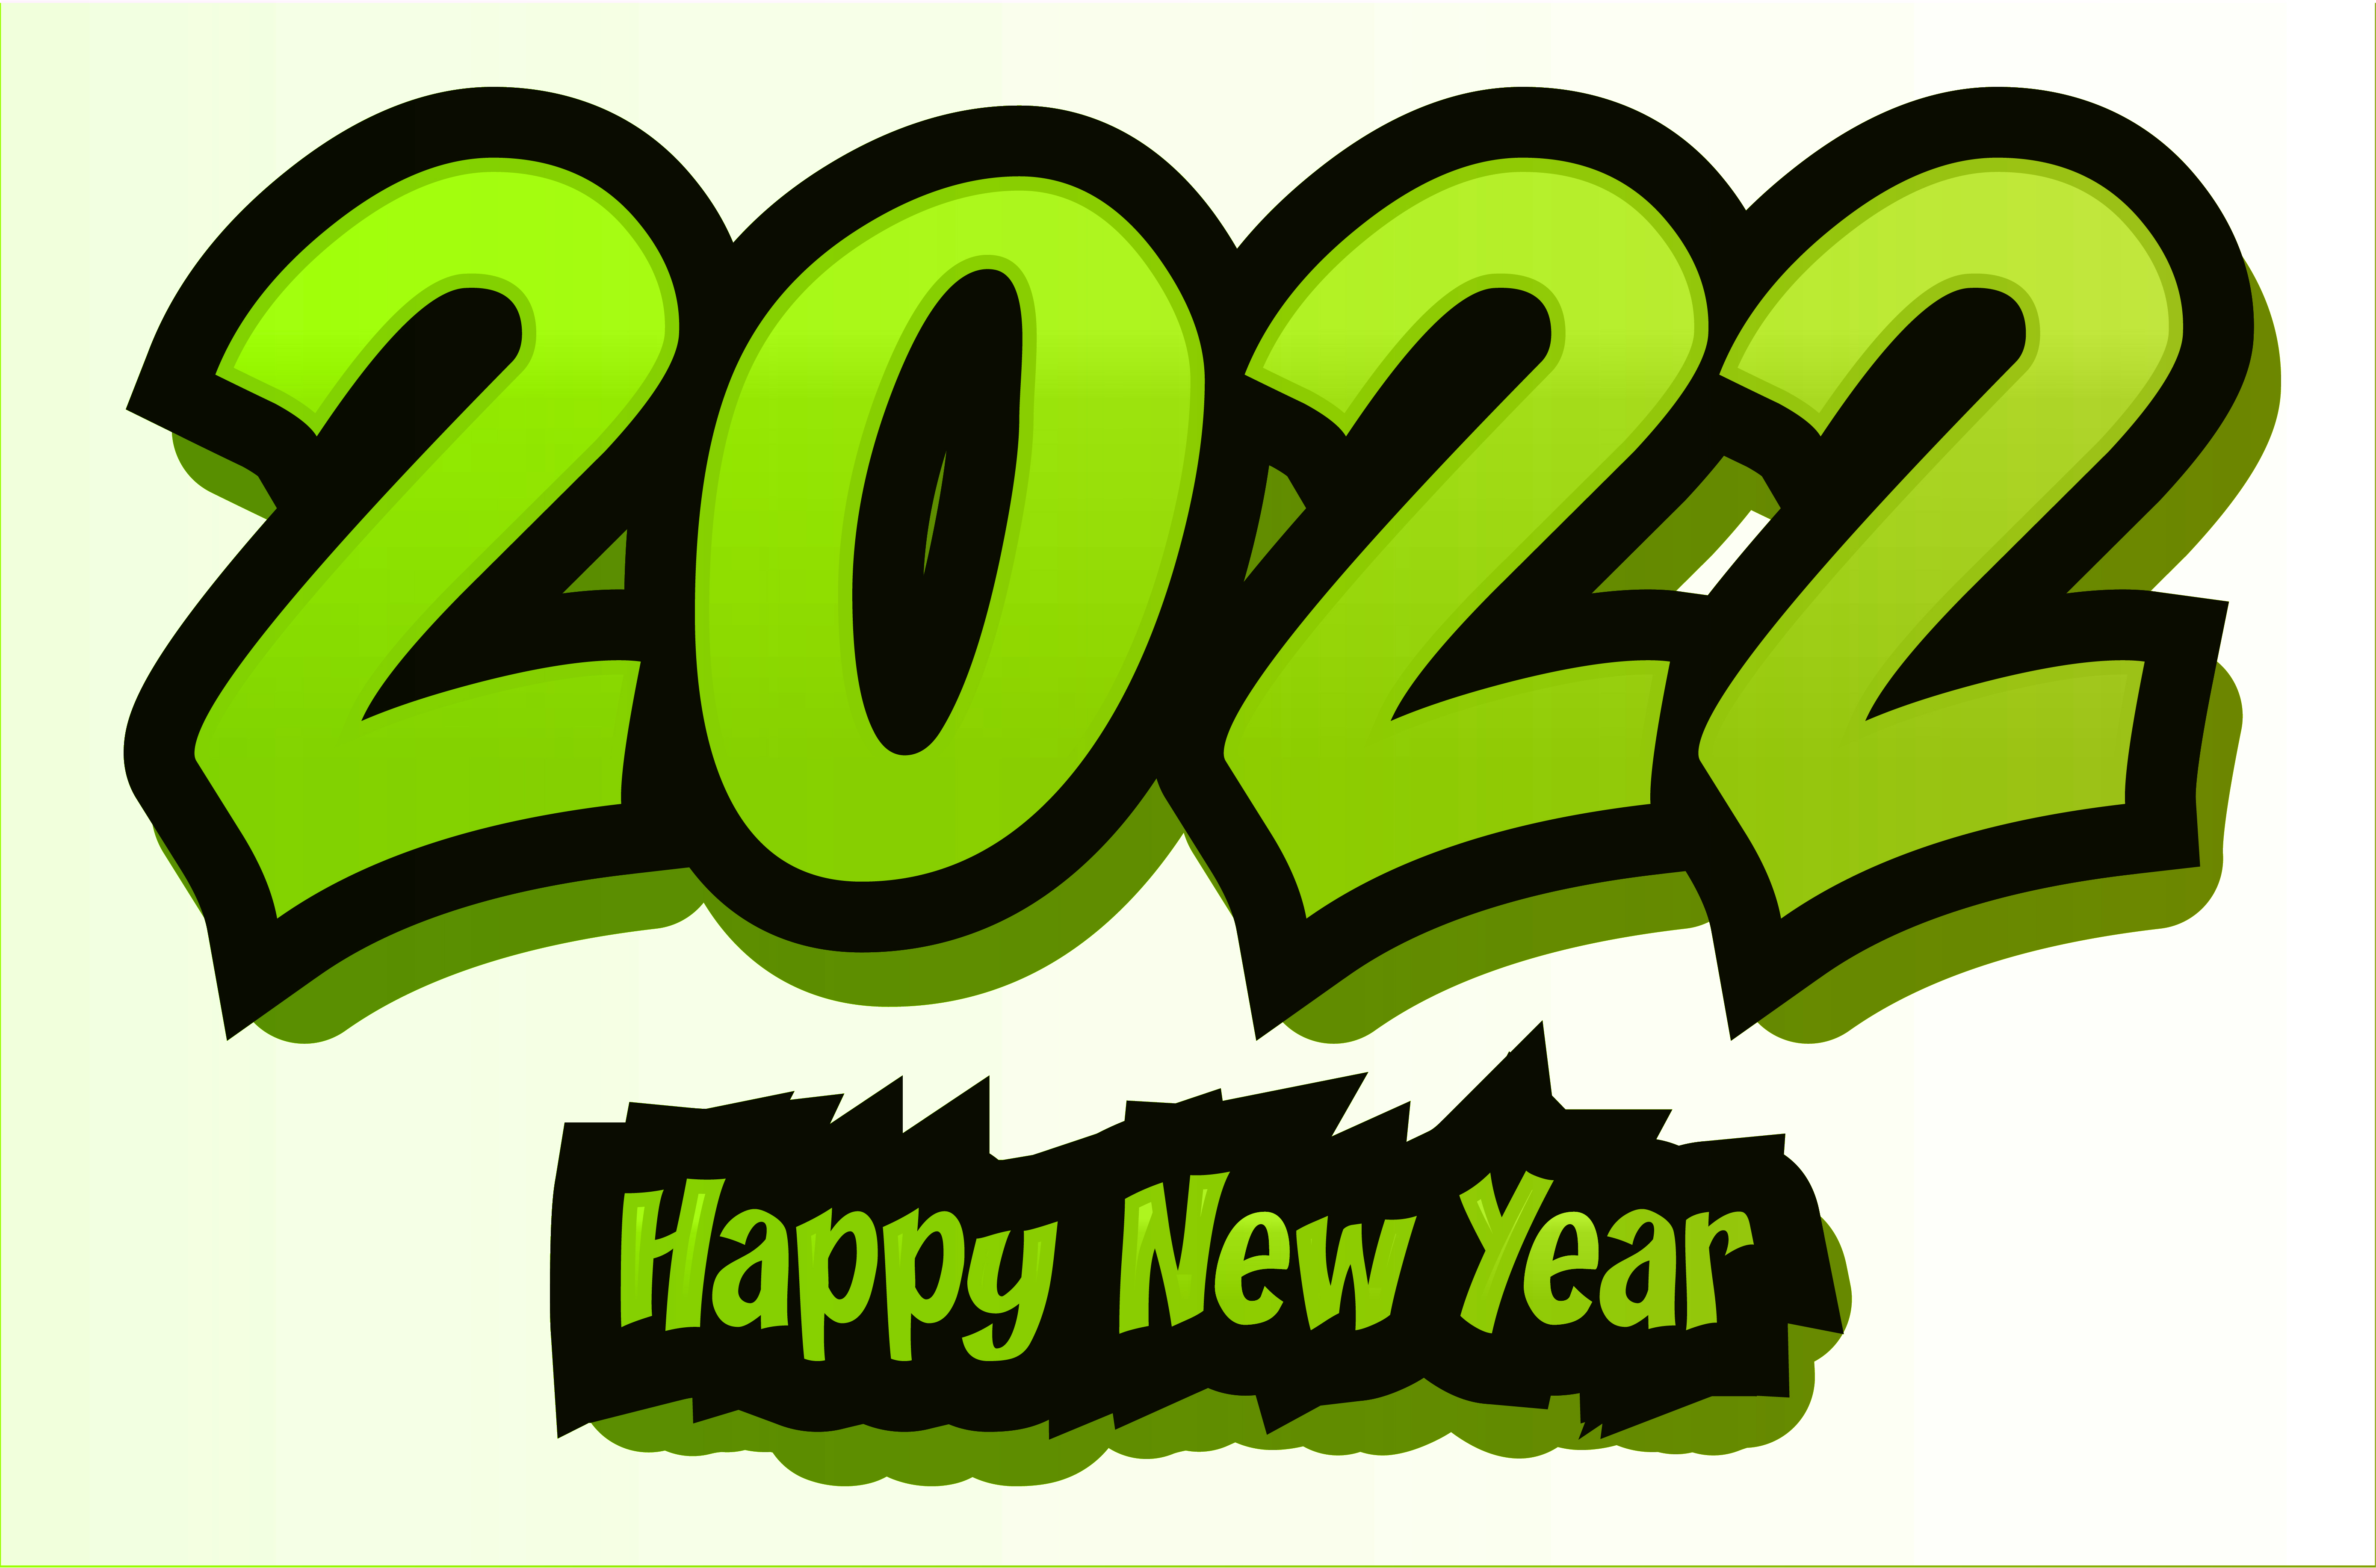 Vector nền xanh mừng năm mới 2022 miễn phí sẽ giúp bạn tạo nên những thiết kế độc đáo và ấn tượng cho năm mới sắp đến. Hãy cùng khám phá những vector nền xanh đẹp mắt này và tạo nên những bức tranh Tết tuyệt vời.